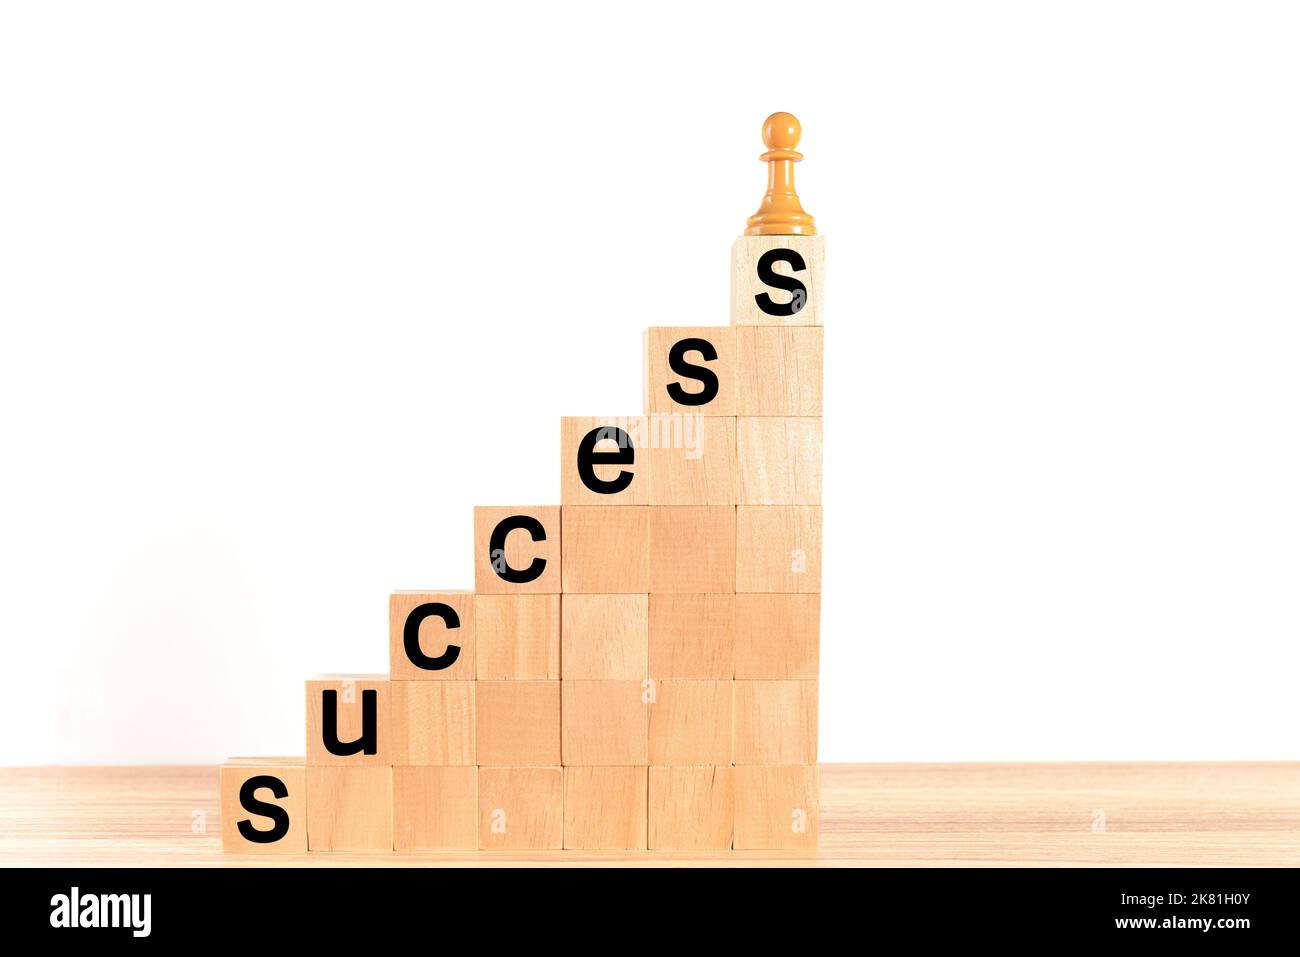 Pedina di scacchi in cima a una scala a blocchi di legno, con la parola 'scess' scritta sui gradini, su sfondo bianco. Concetto di auto-miglioramento, lead Foto Stock